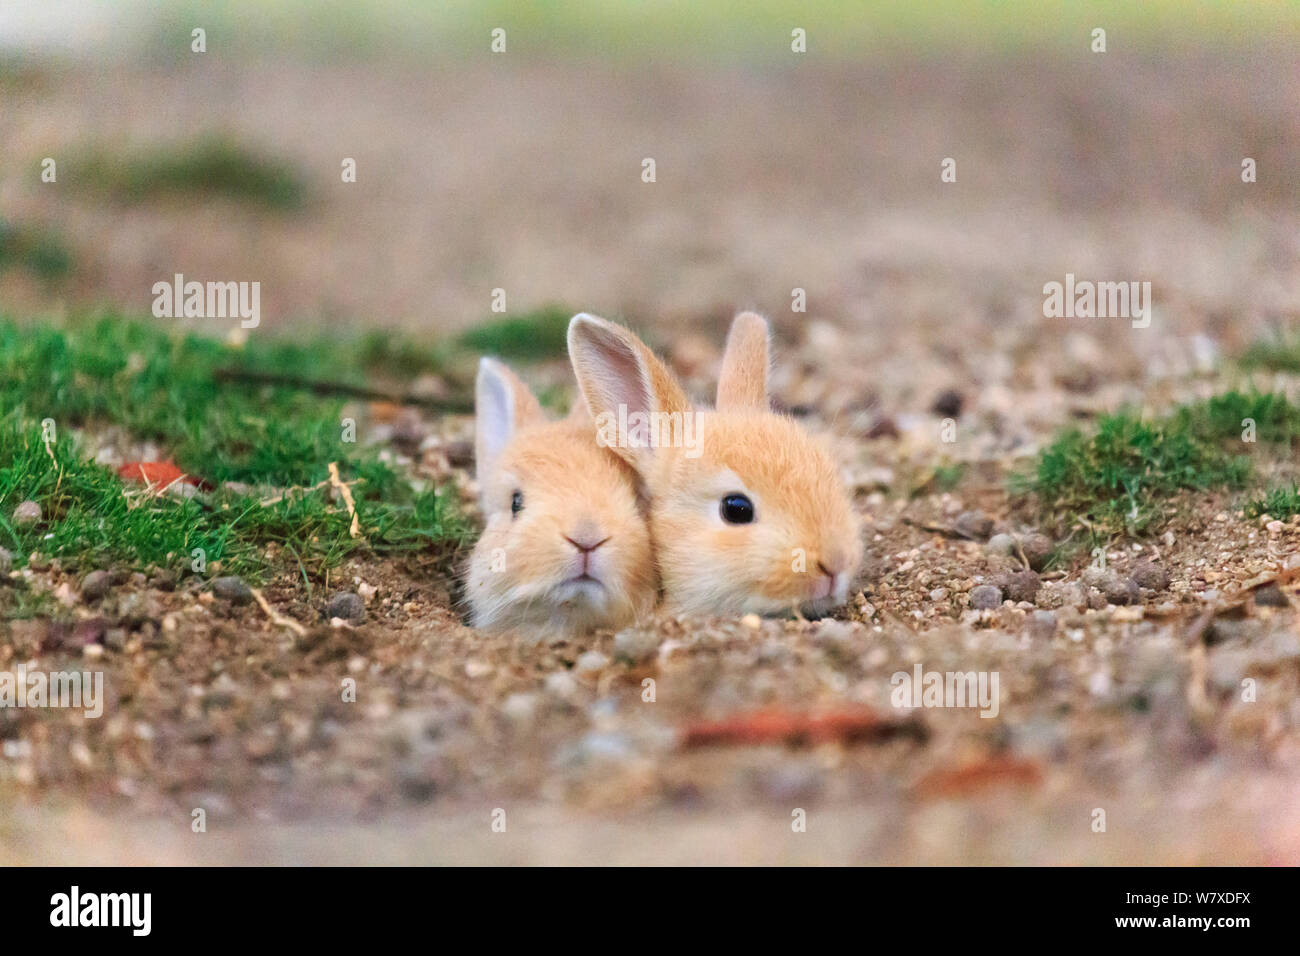 Les sauvages lapin (Oryctolagus cuniculus) bébés poussant la tête de nid, Okunojima Island, également connu sous le nom de Rabbit Island, Hiroshima, Japon. Banque D'Images